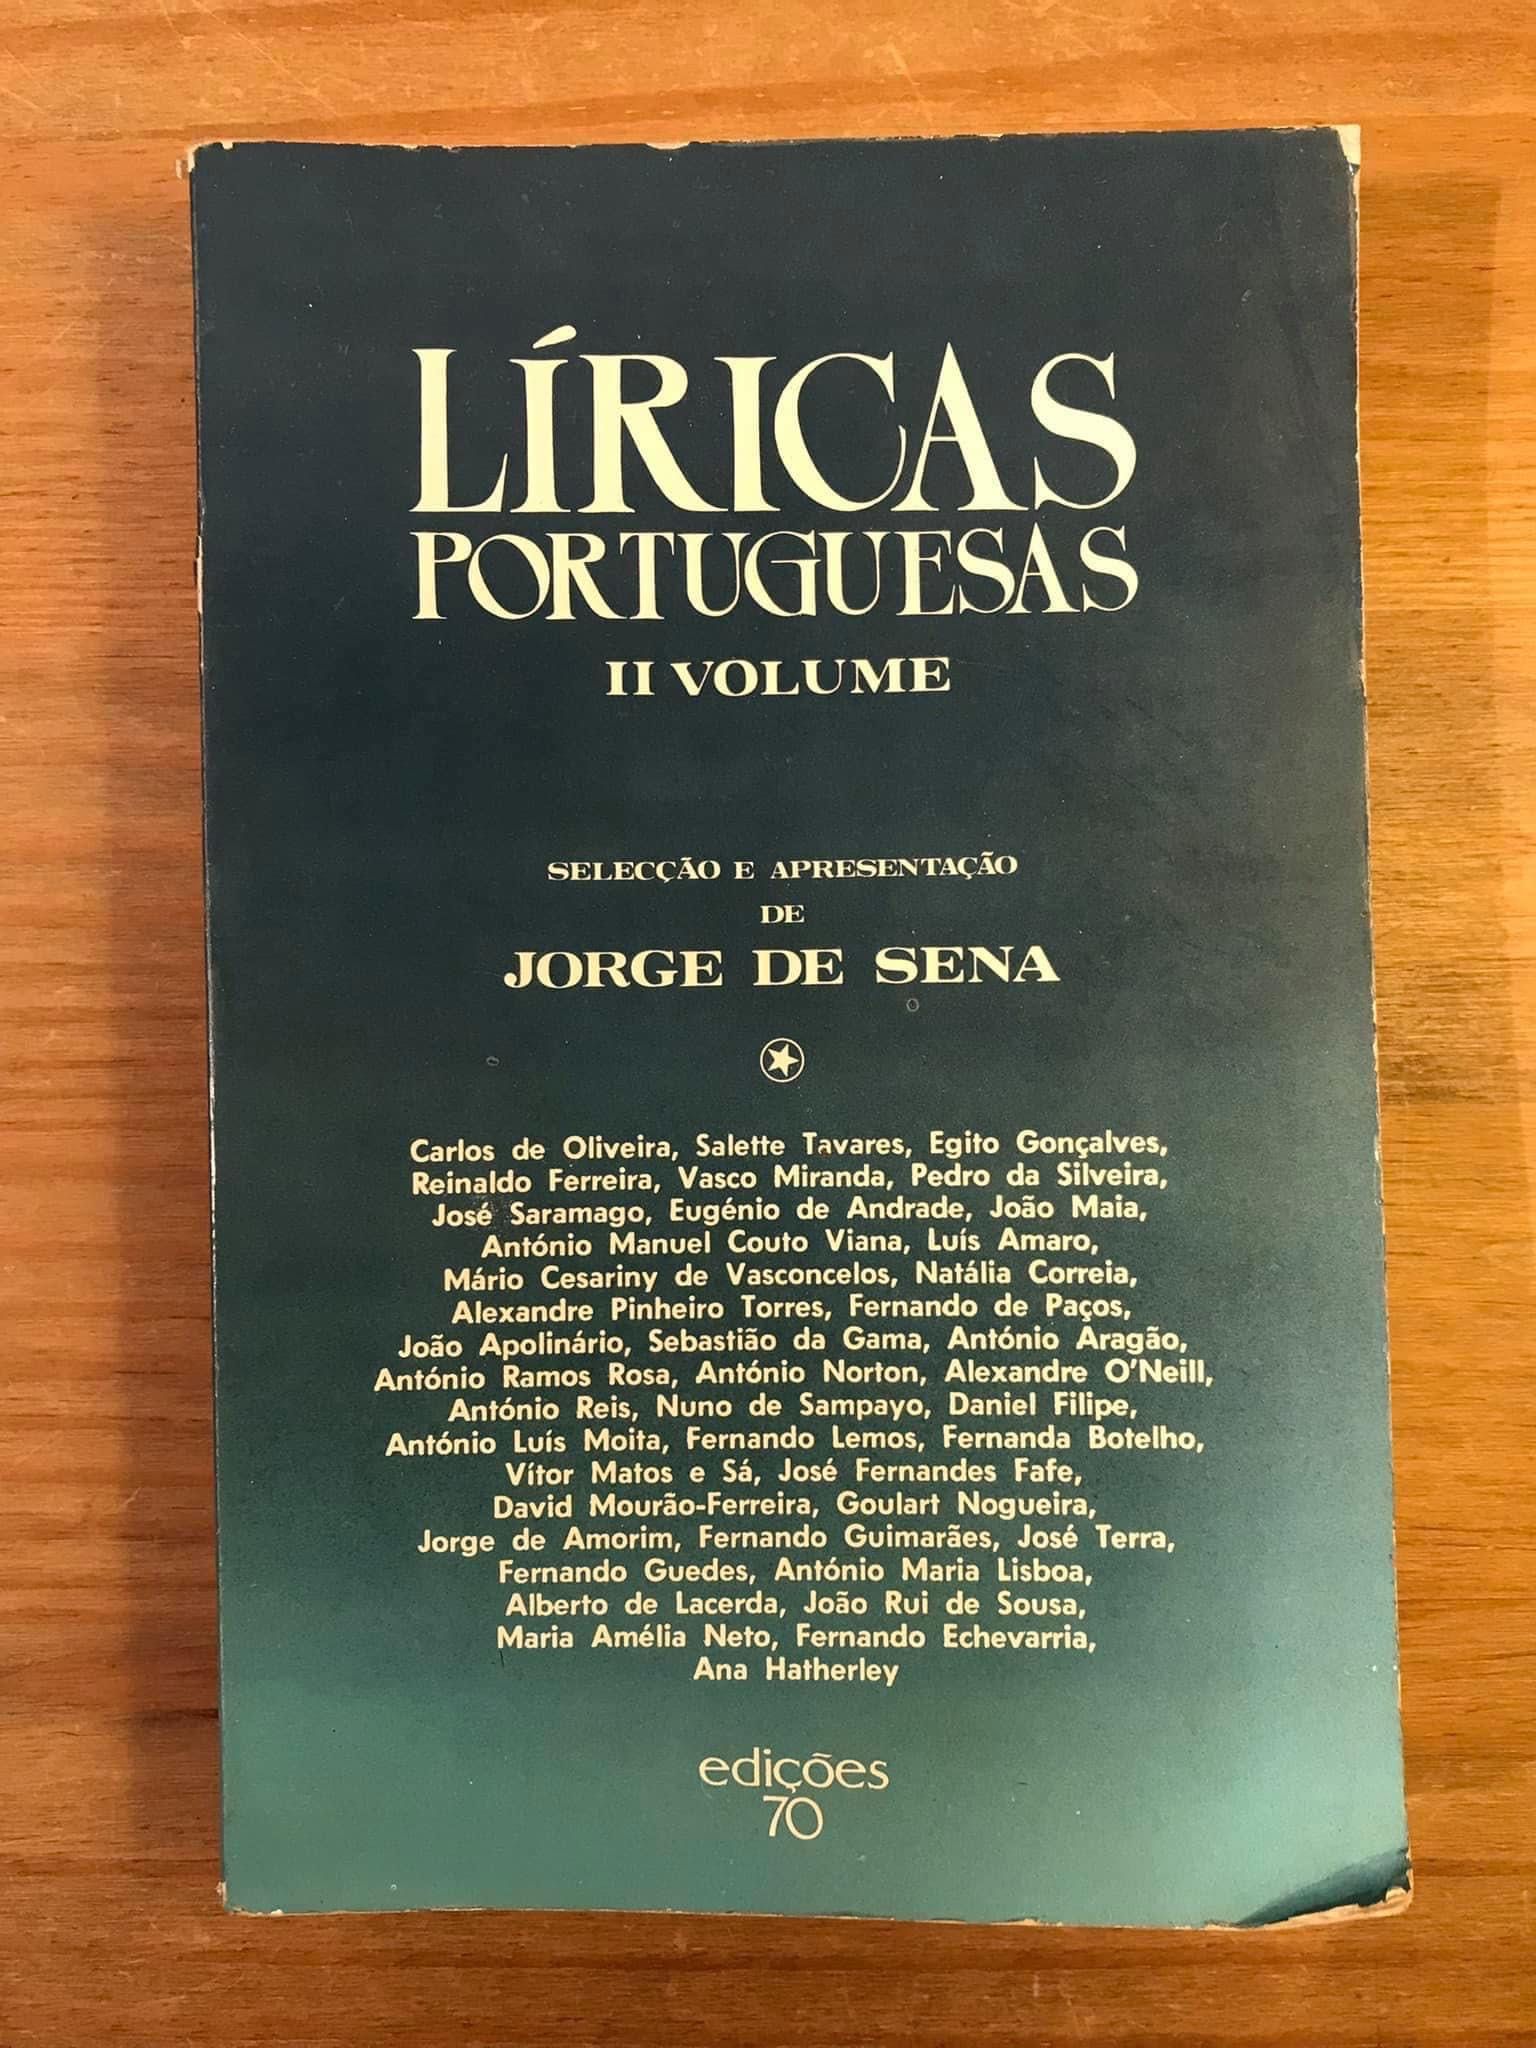 Líricas Portuguesas - Jorge de Sena (portes grátis)